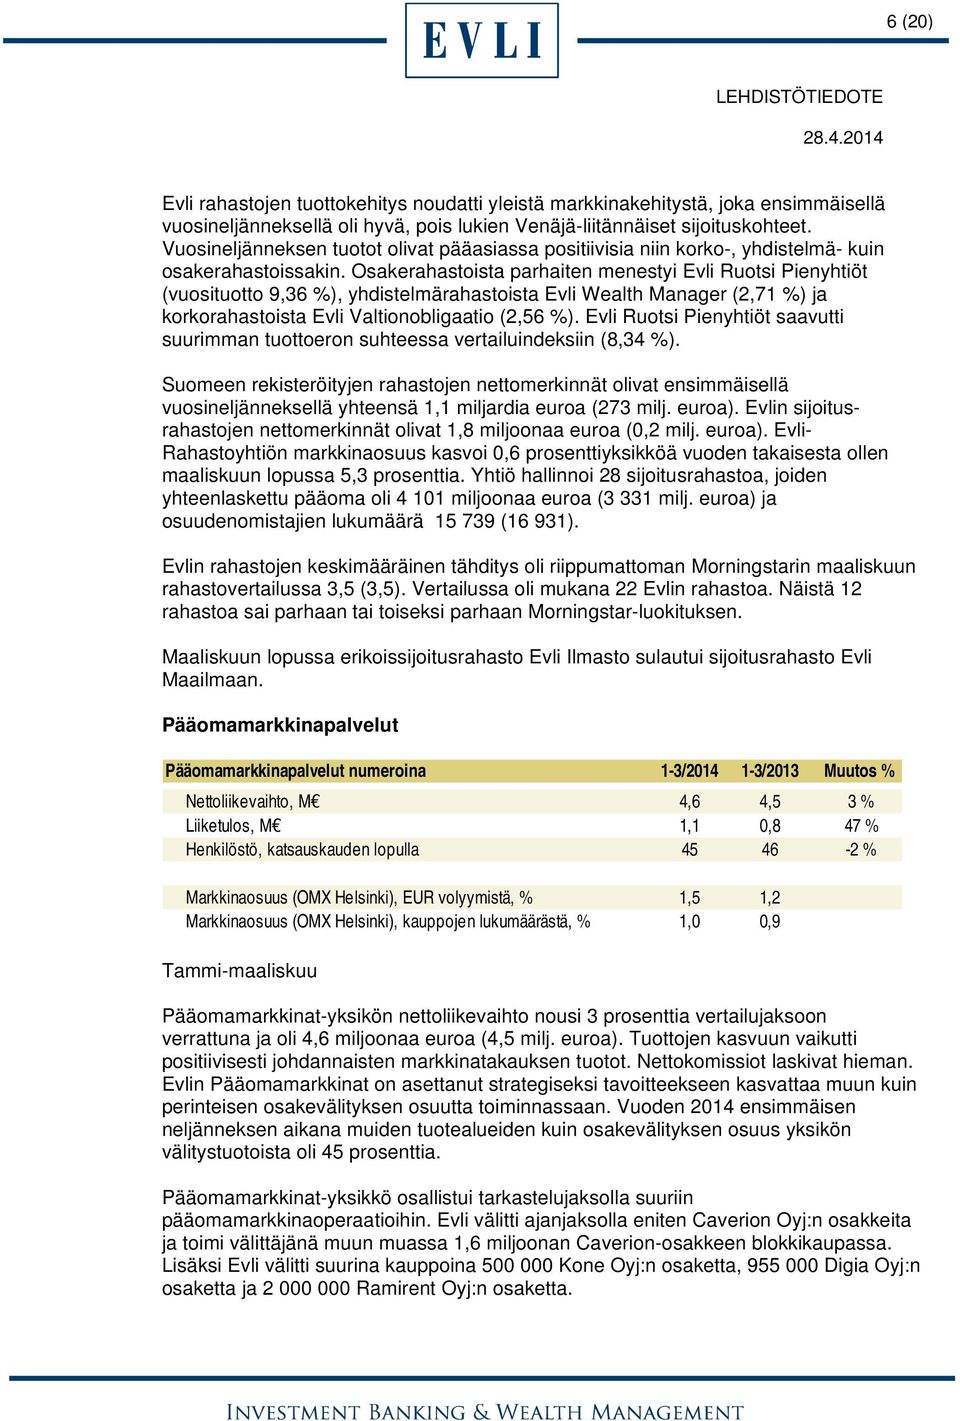 Osakerahastoista parhaiten menestyi Evli Ruotsi Pienyhtiöt (vuosituotto 9,36 %), yhdistelmärahastoista Evli Wealth Manager (2,71 %) ja korkorahastoista Evli Valtionobligaatio (2,56 %).